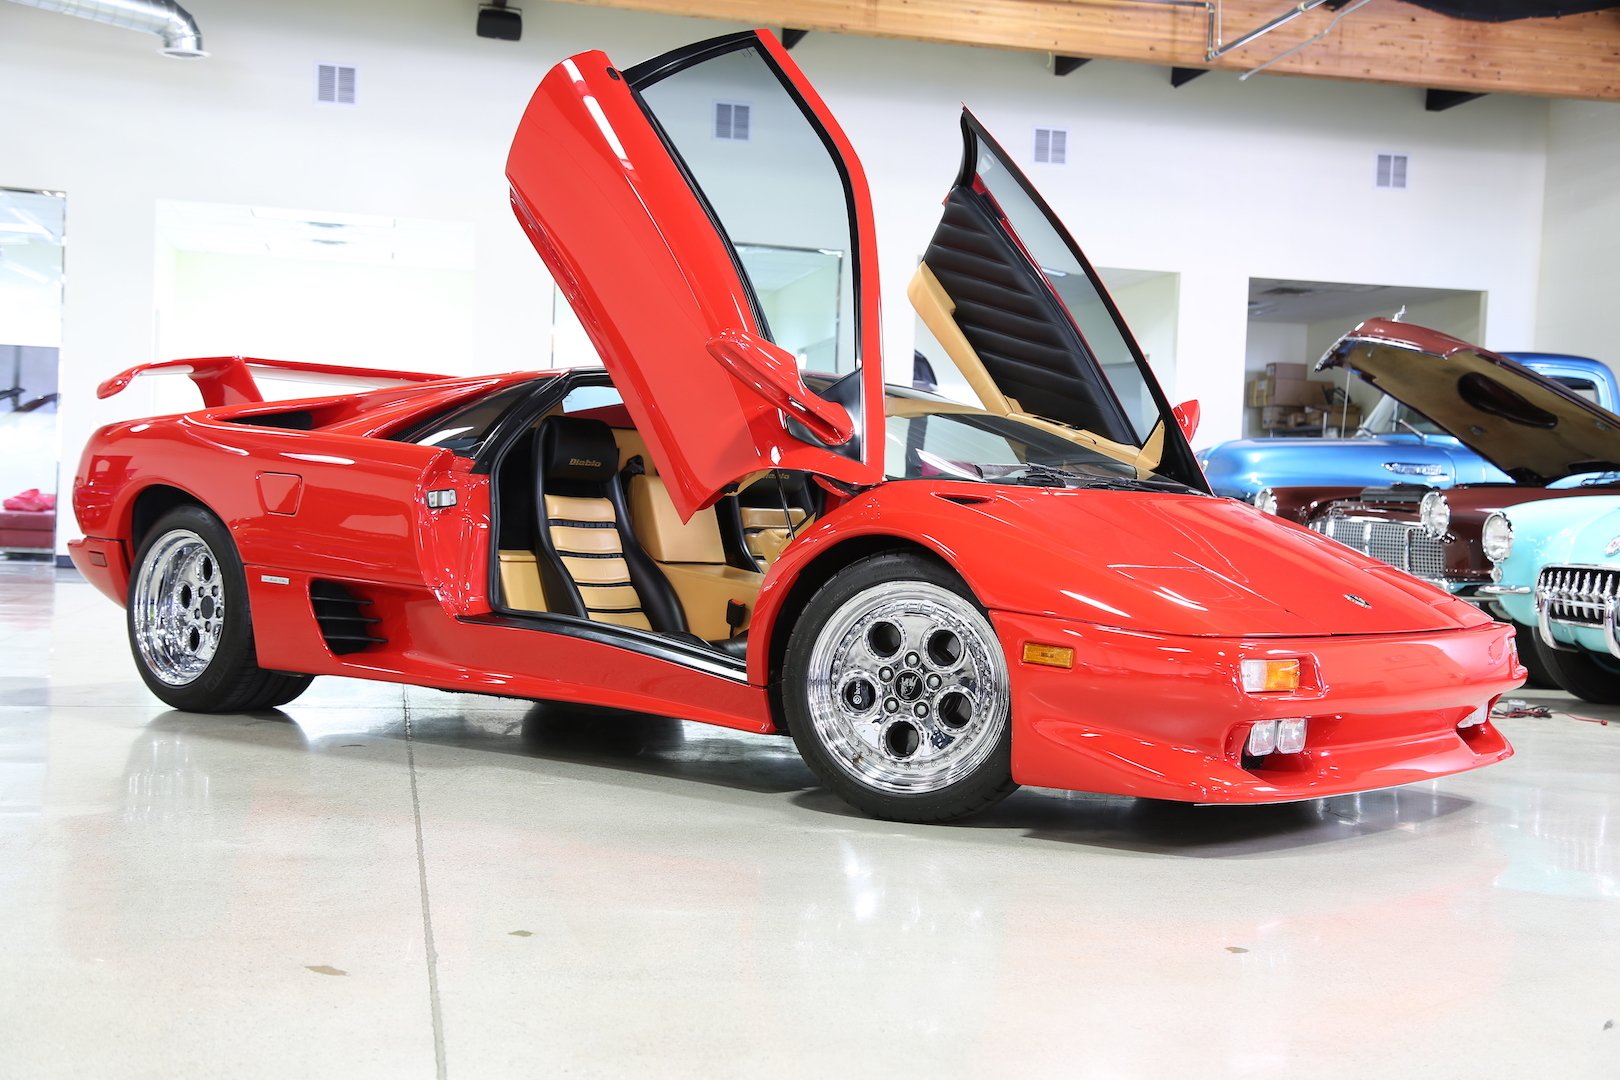 1996 Lamborghini Diablo